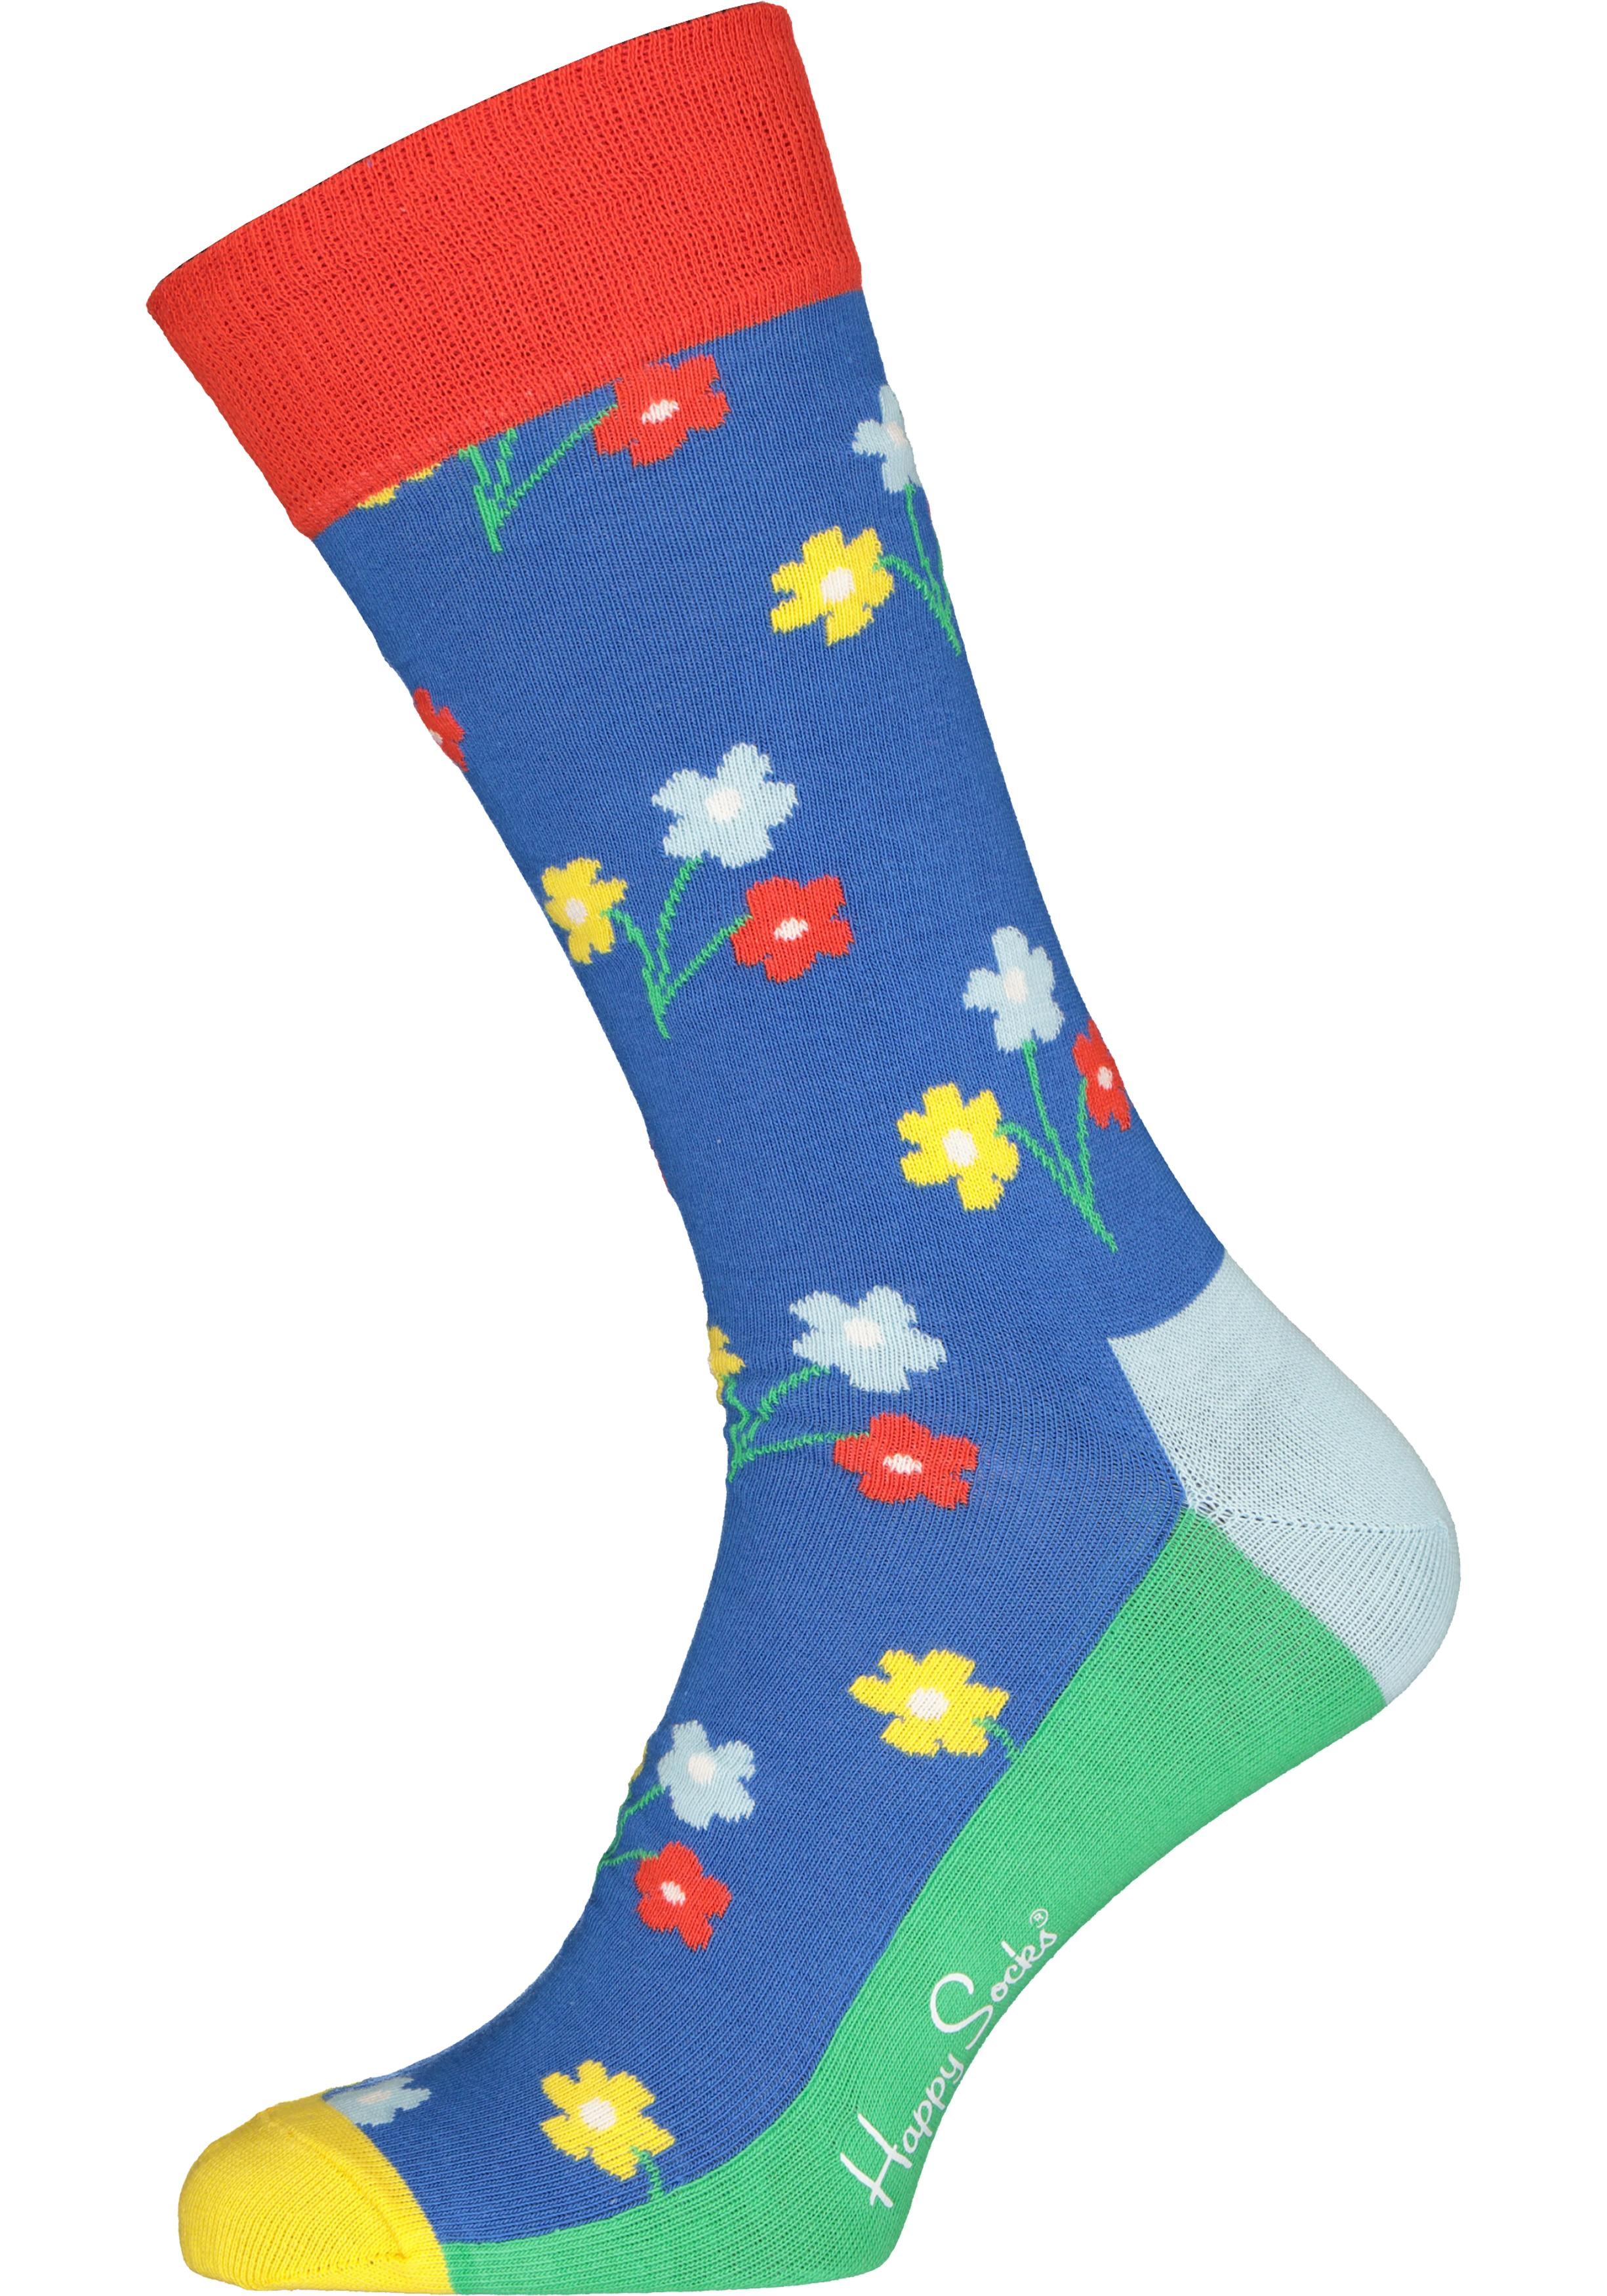 autobiografie Oneerlijk Oost Happy Socks Bouquet Sock, bloemmig blauw - Shop de nieuwste voorjaarsmode